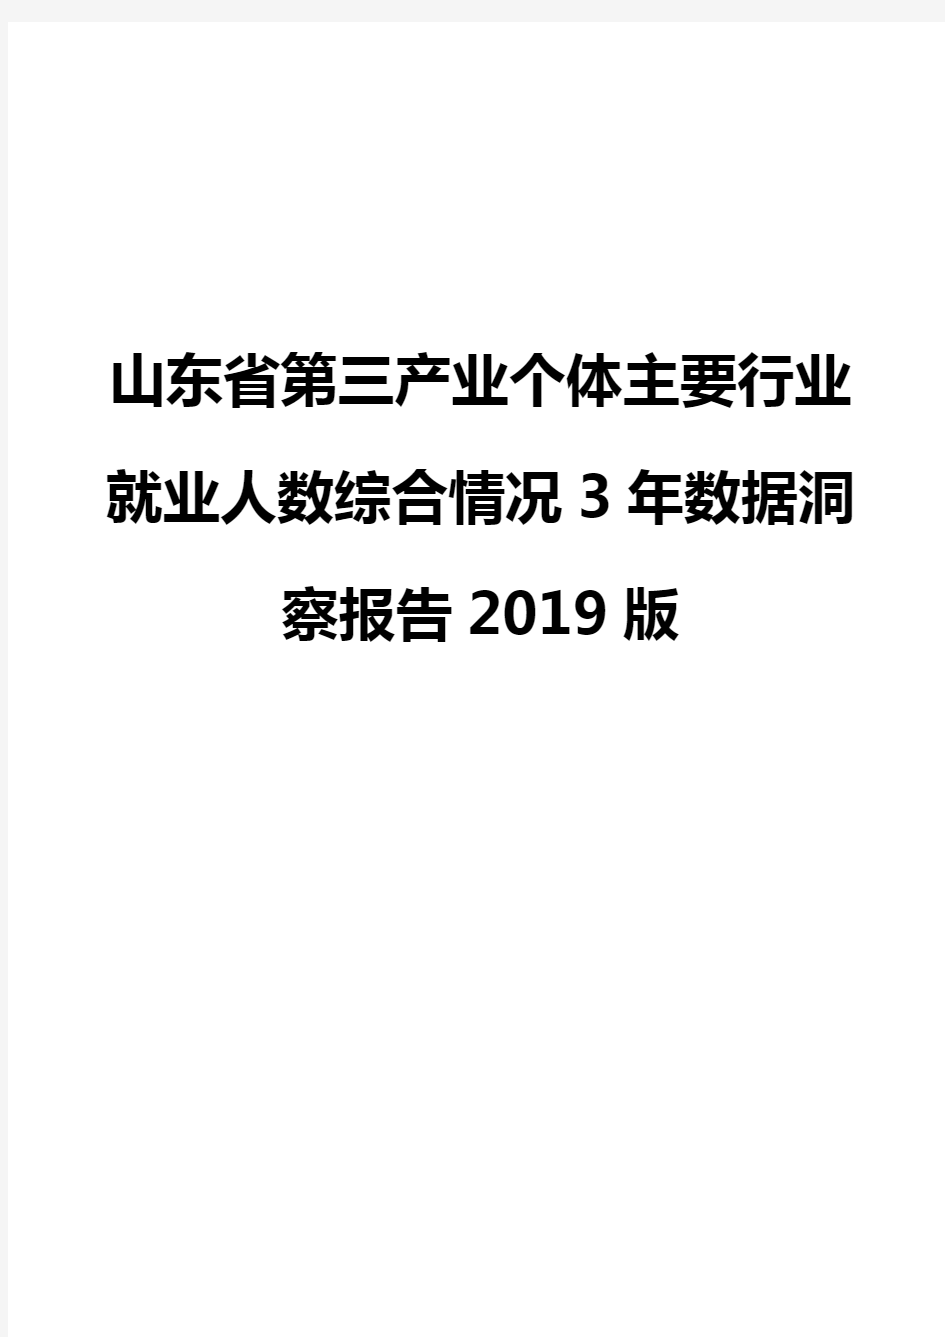 山东省第三产业个体主要行业就业人数综合情况3年数据洞察报告2019版